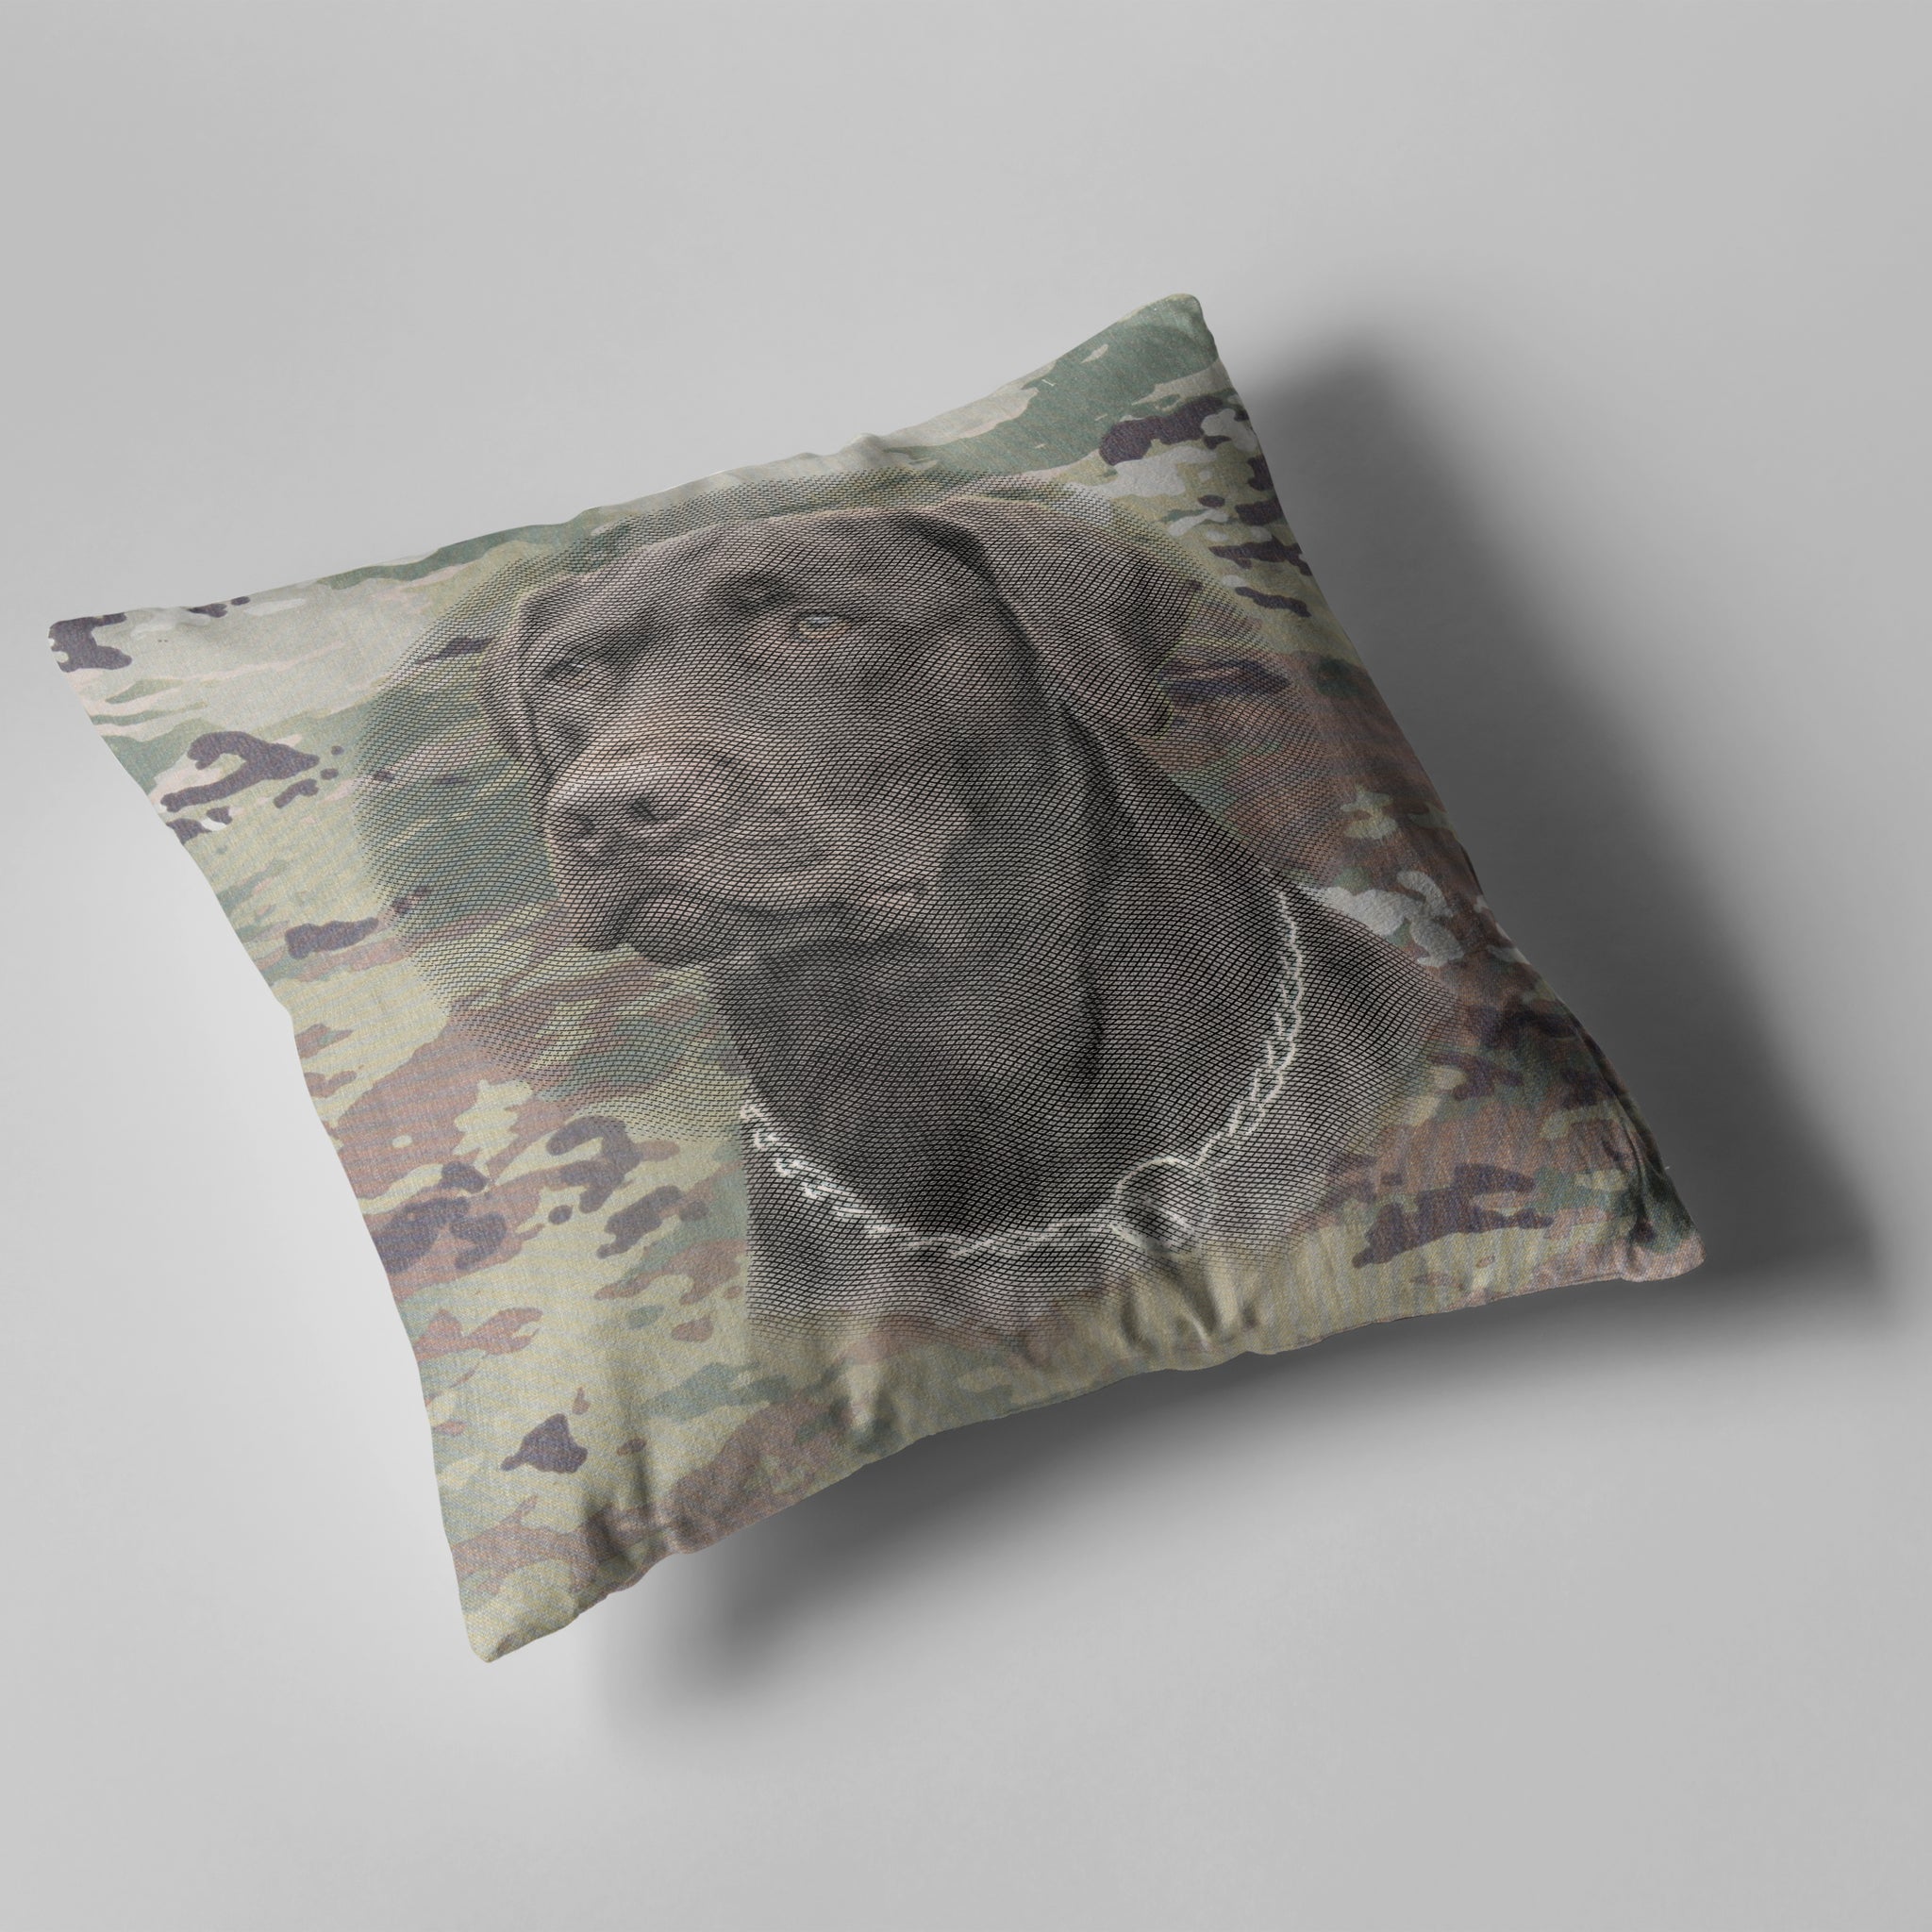 throw pillows - camo - includes your pet design